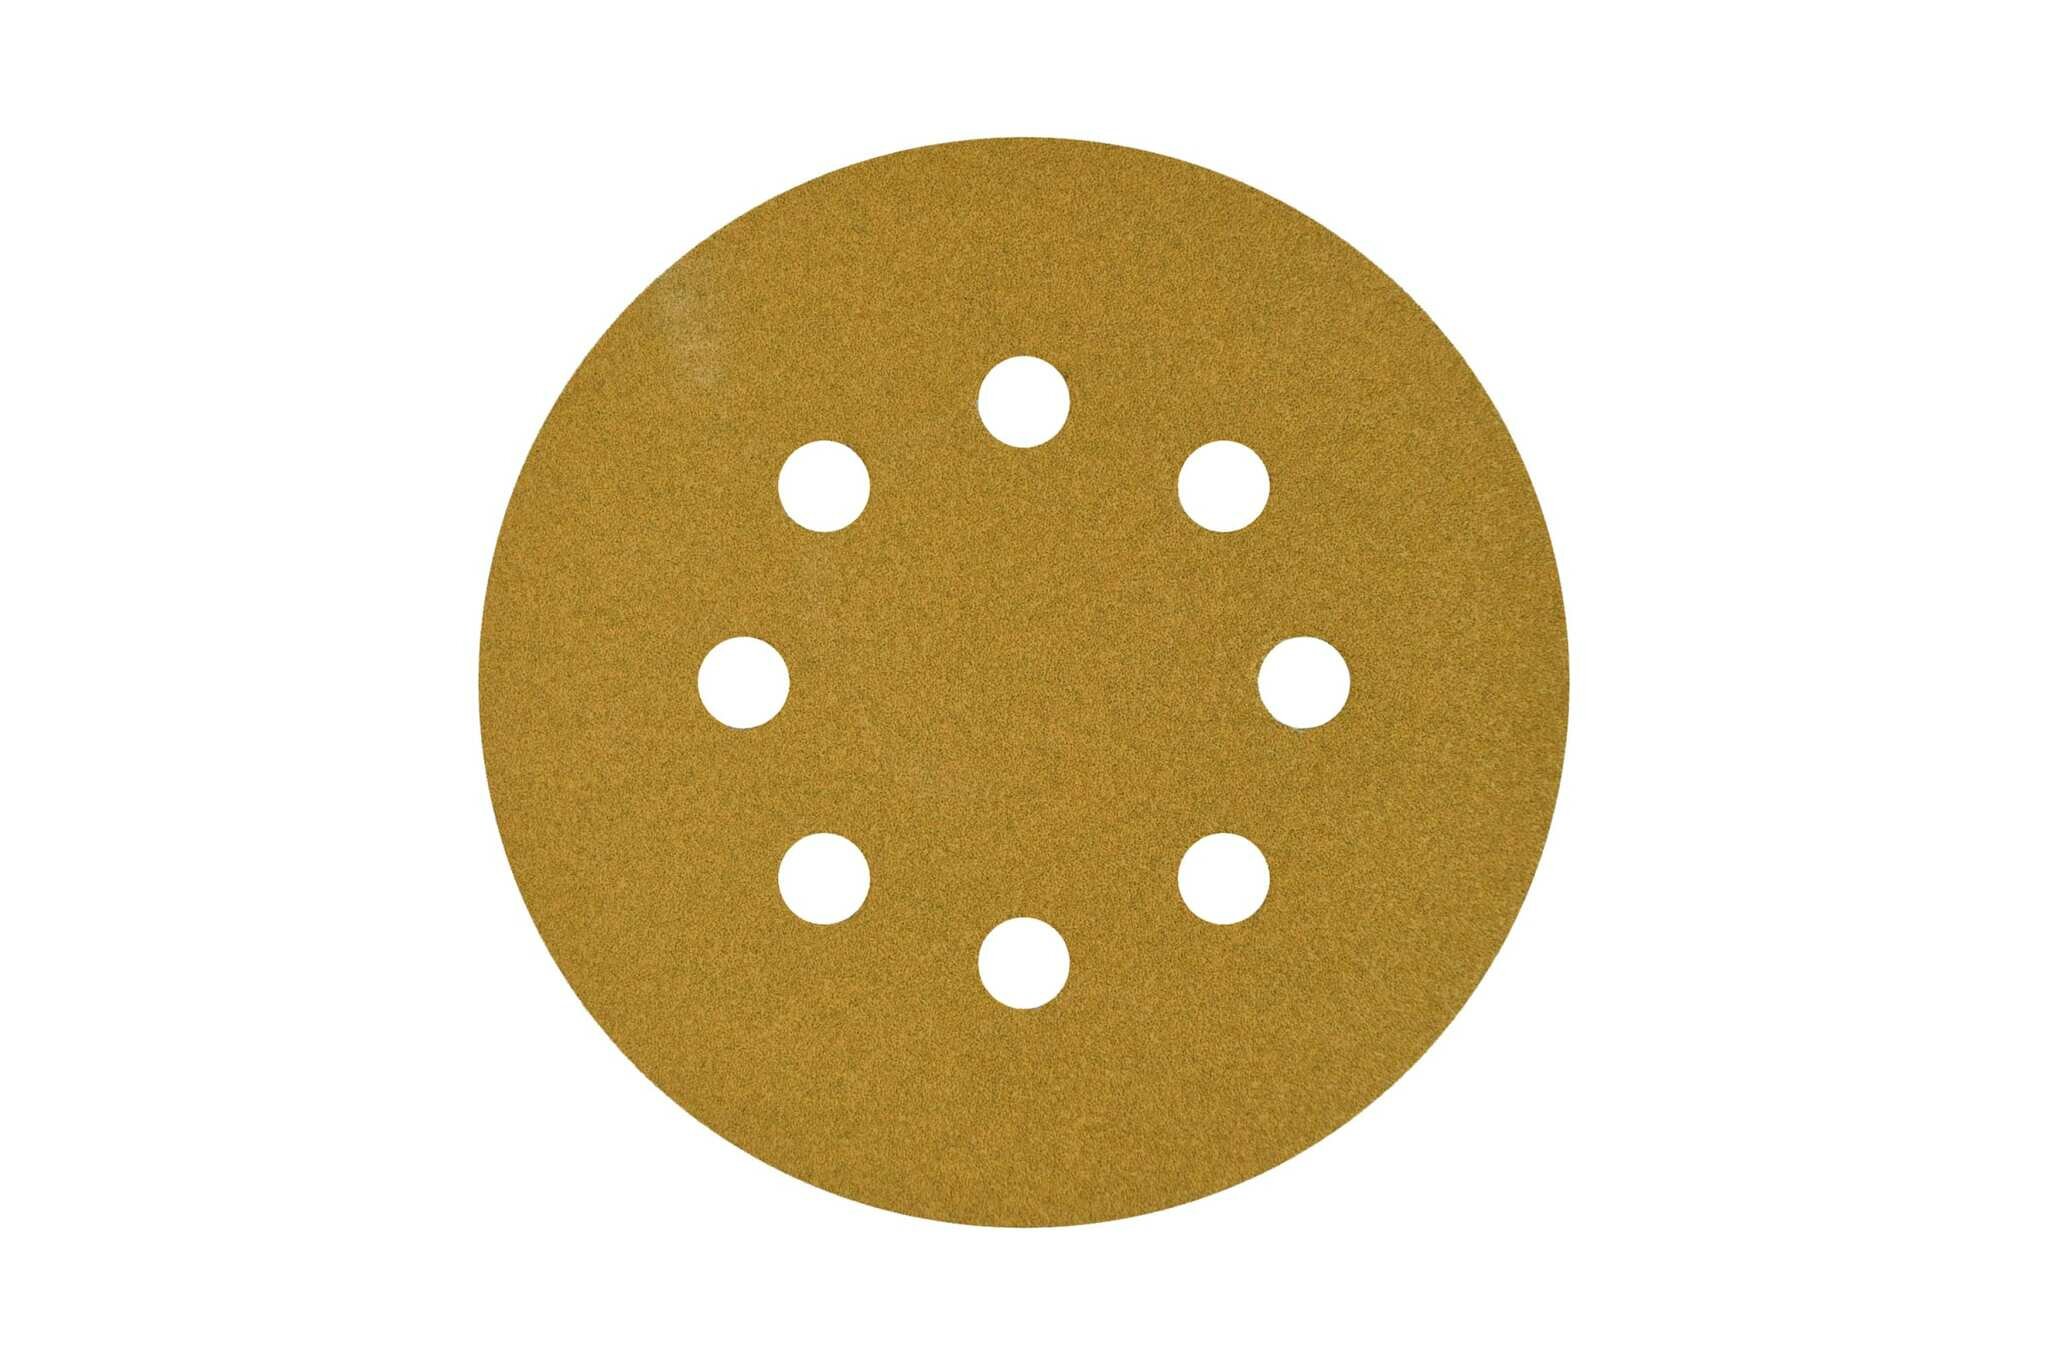 Круг шлифовальный на липучке PAPER GOLD (5 шт; 125 мм; 8 отверстий; P120) NAPOLEON npg5-125-8-120